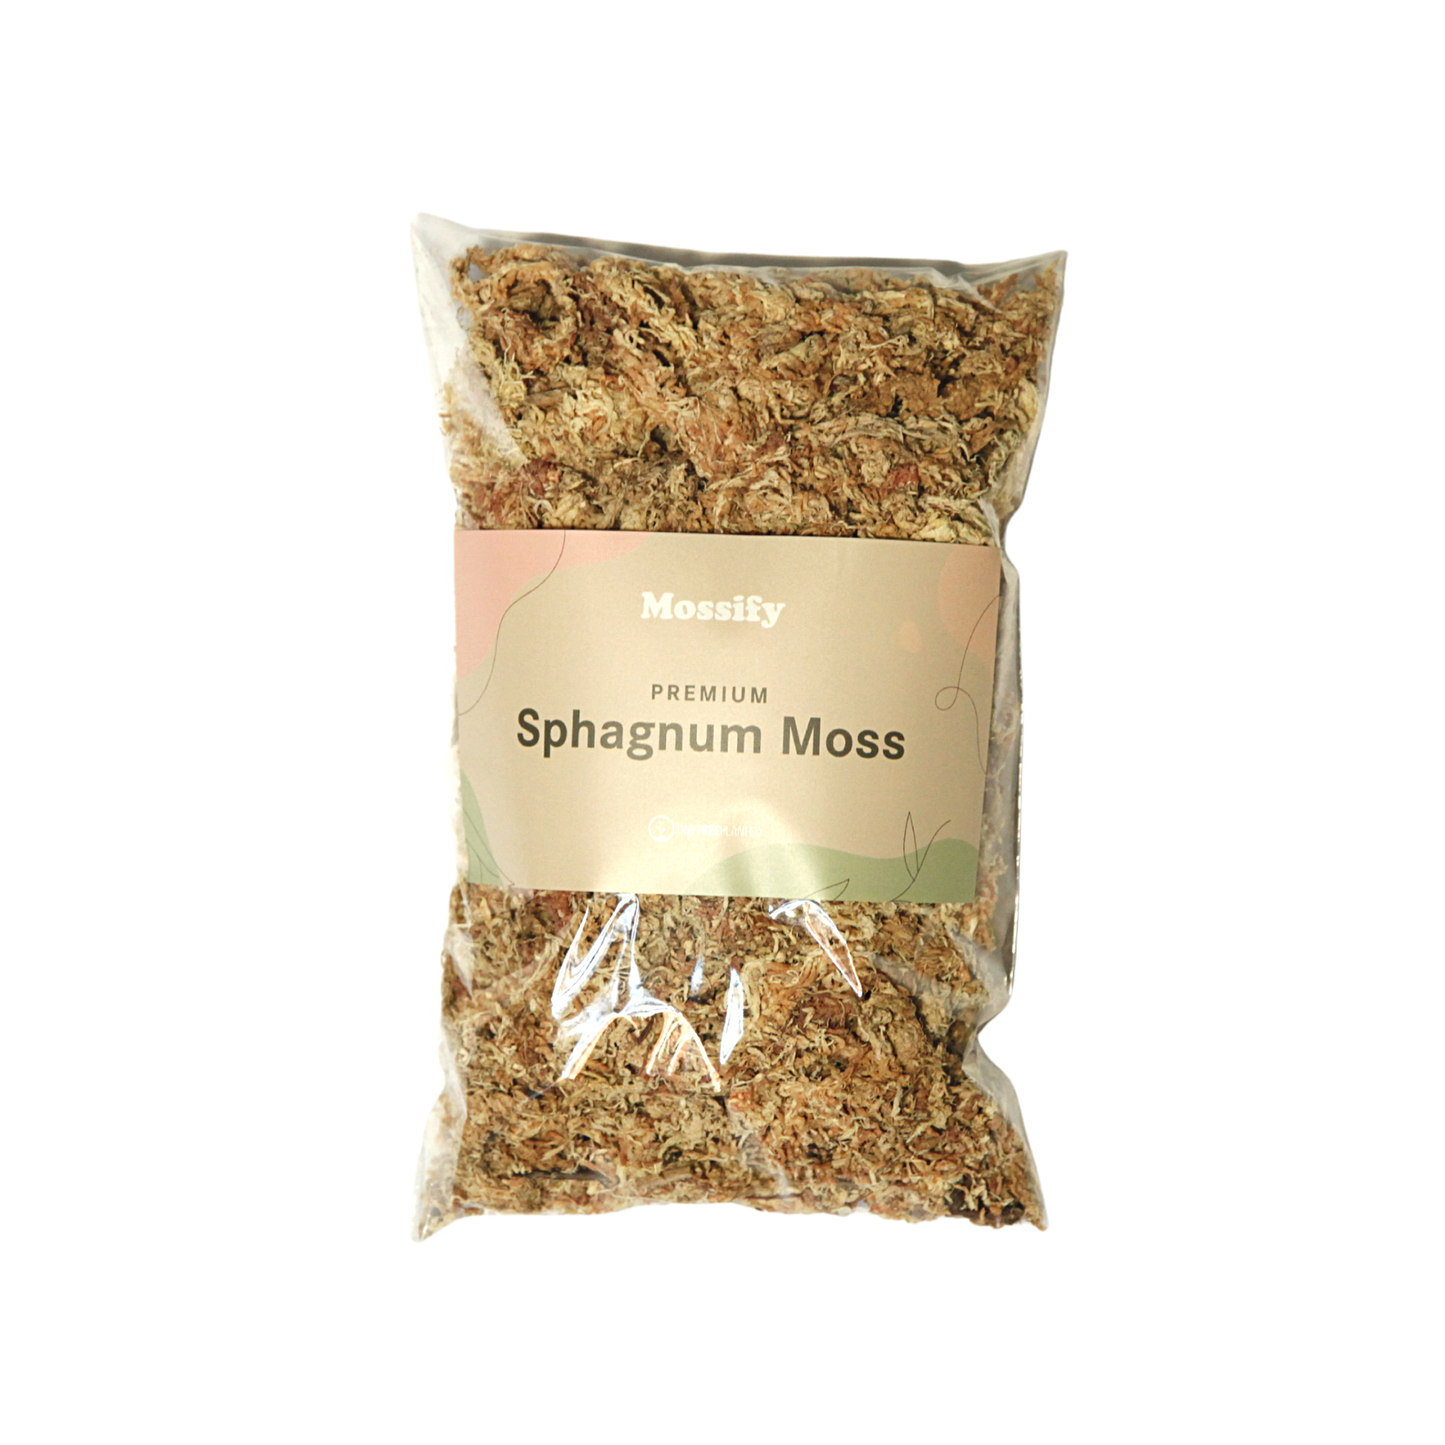 Premium Sphagnum Moss Bags